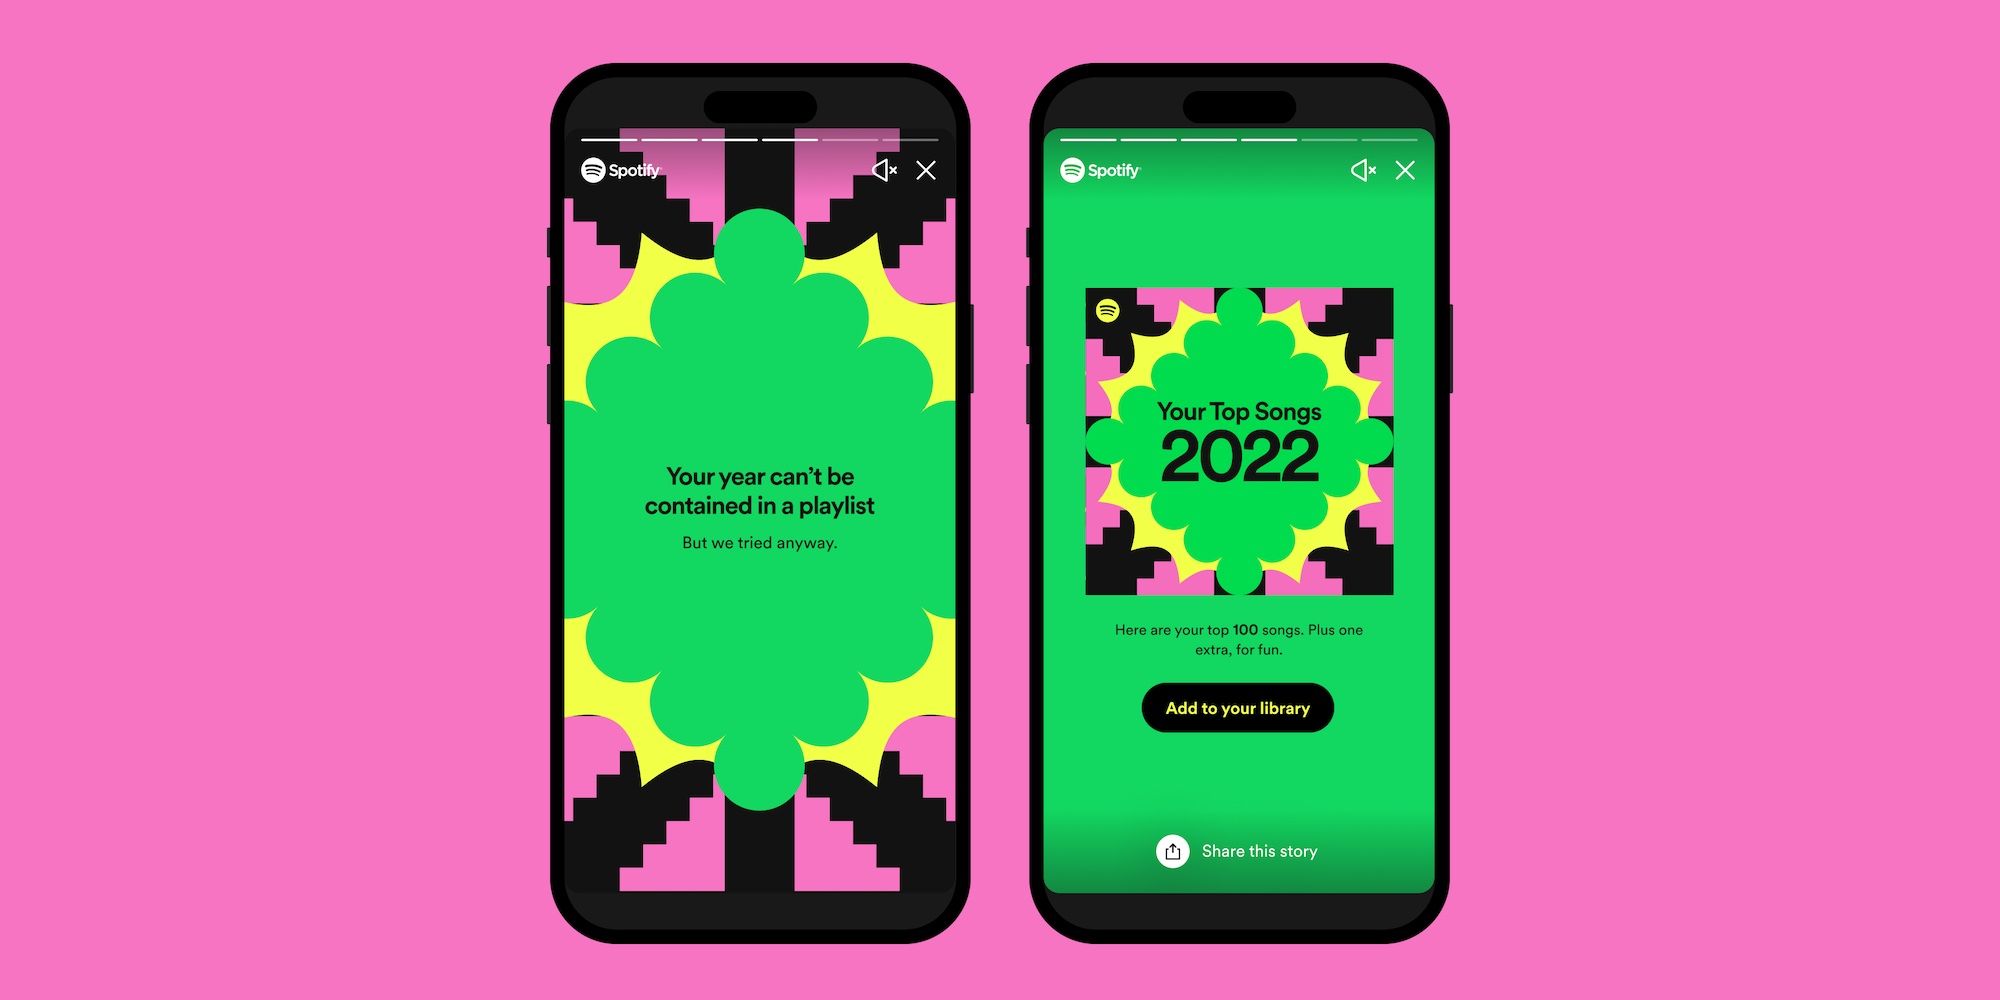 Dois iPhones lado a lado exibindo uma playlist do Spotify Wrapped 2022